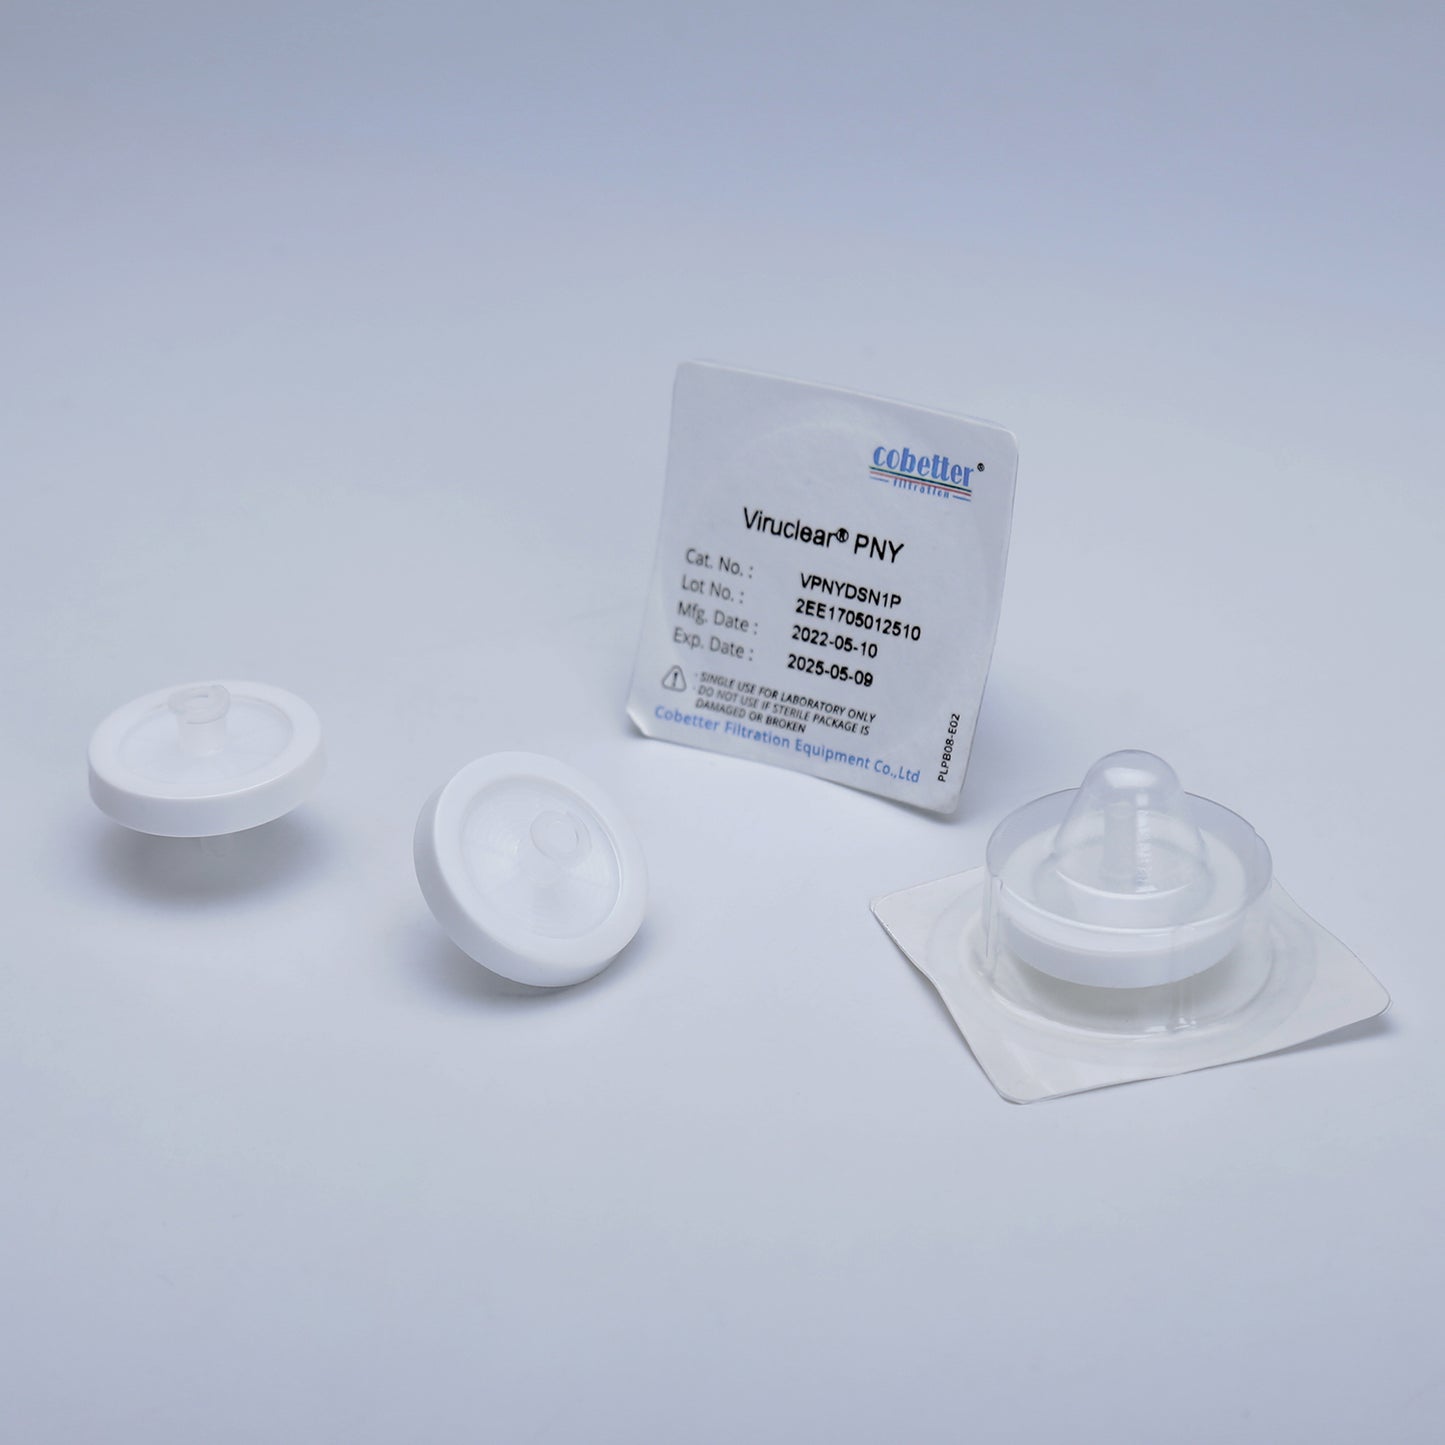 COBETTER ViruClear® PNY Virus Removal Nylon Pre-filtration Syringe Filter